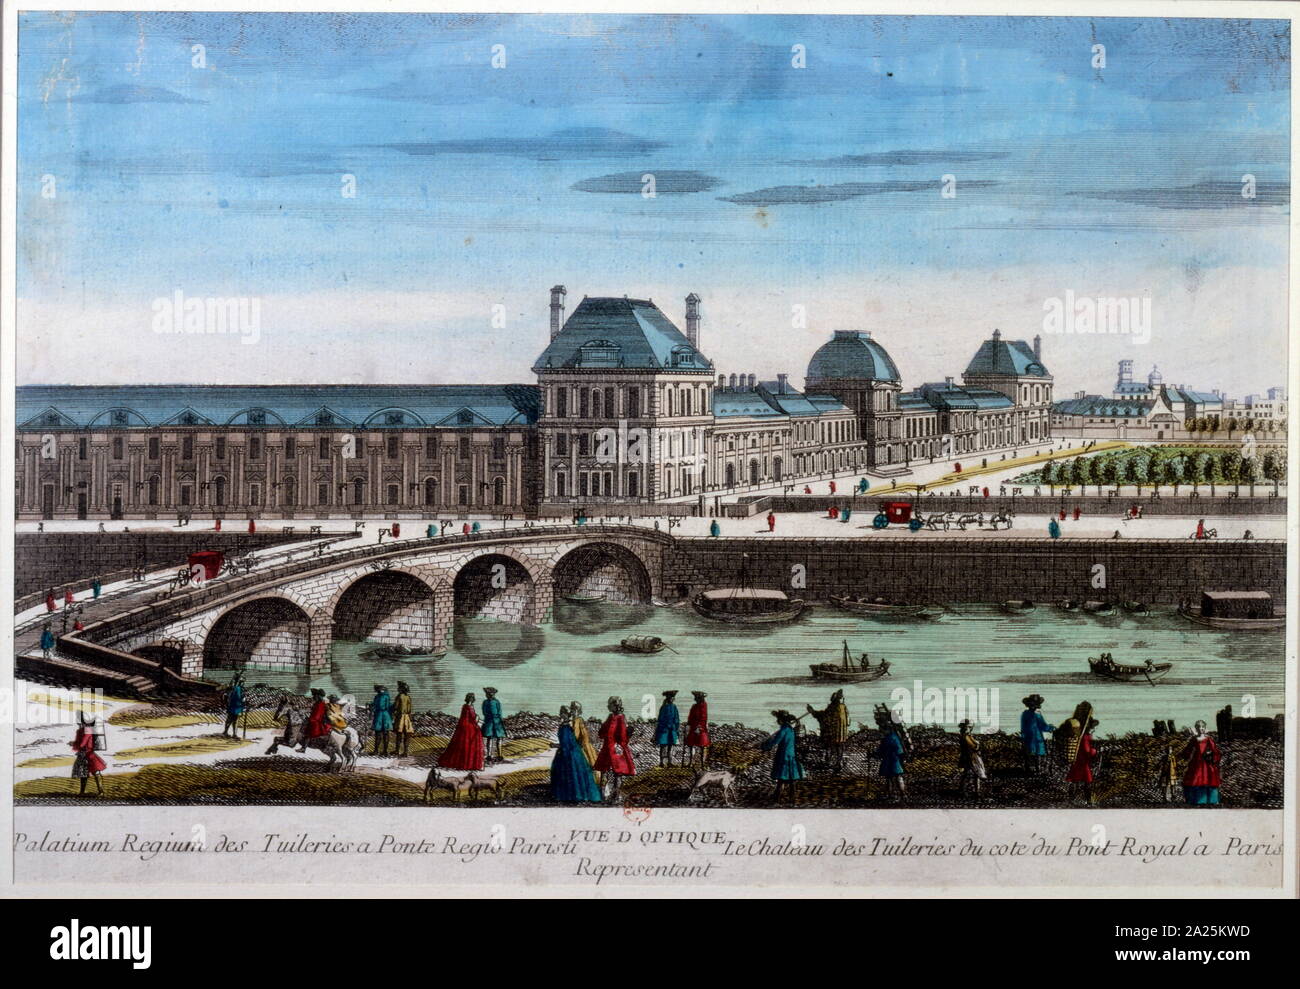 18e siècle vue du Palais (Louvre) à Paris, 1750 Banque D'Images